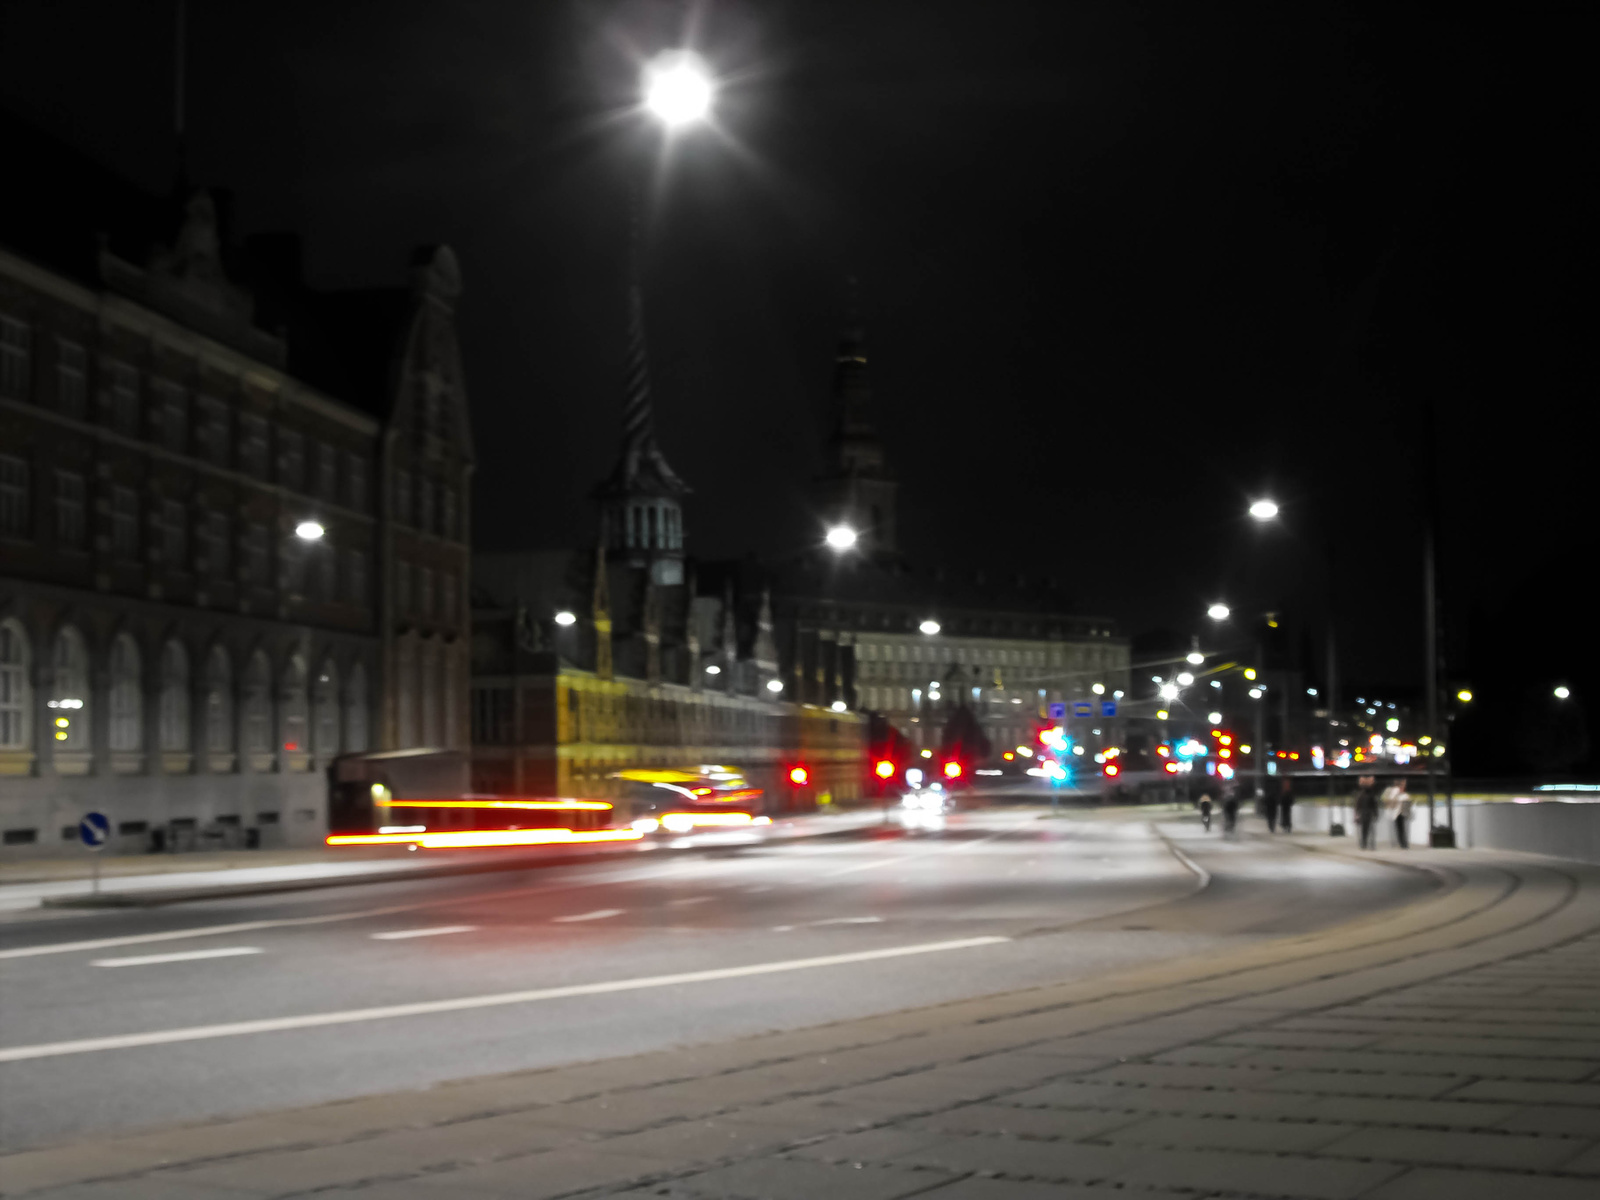 Koppenága København beváros este